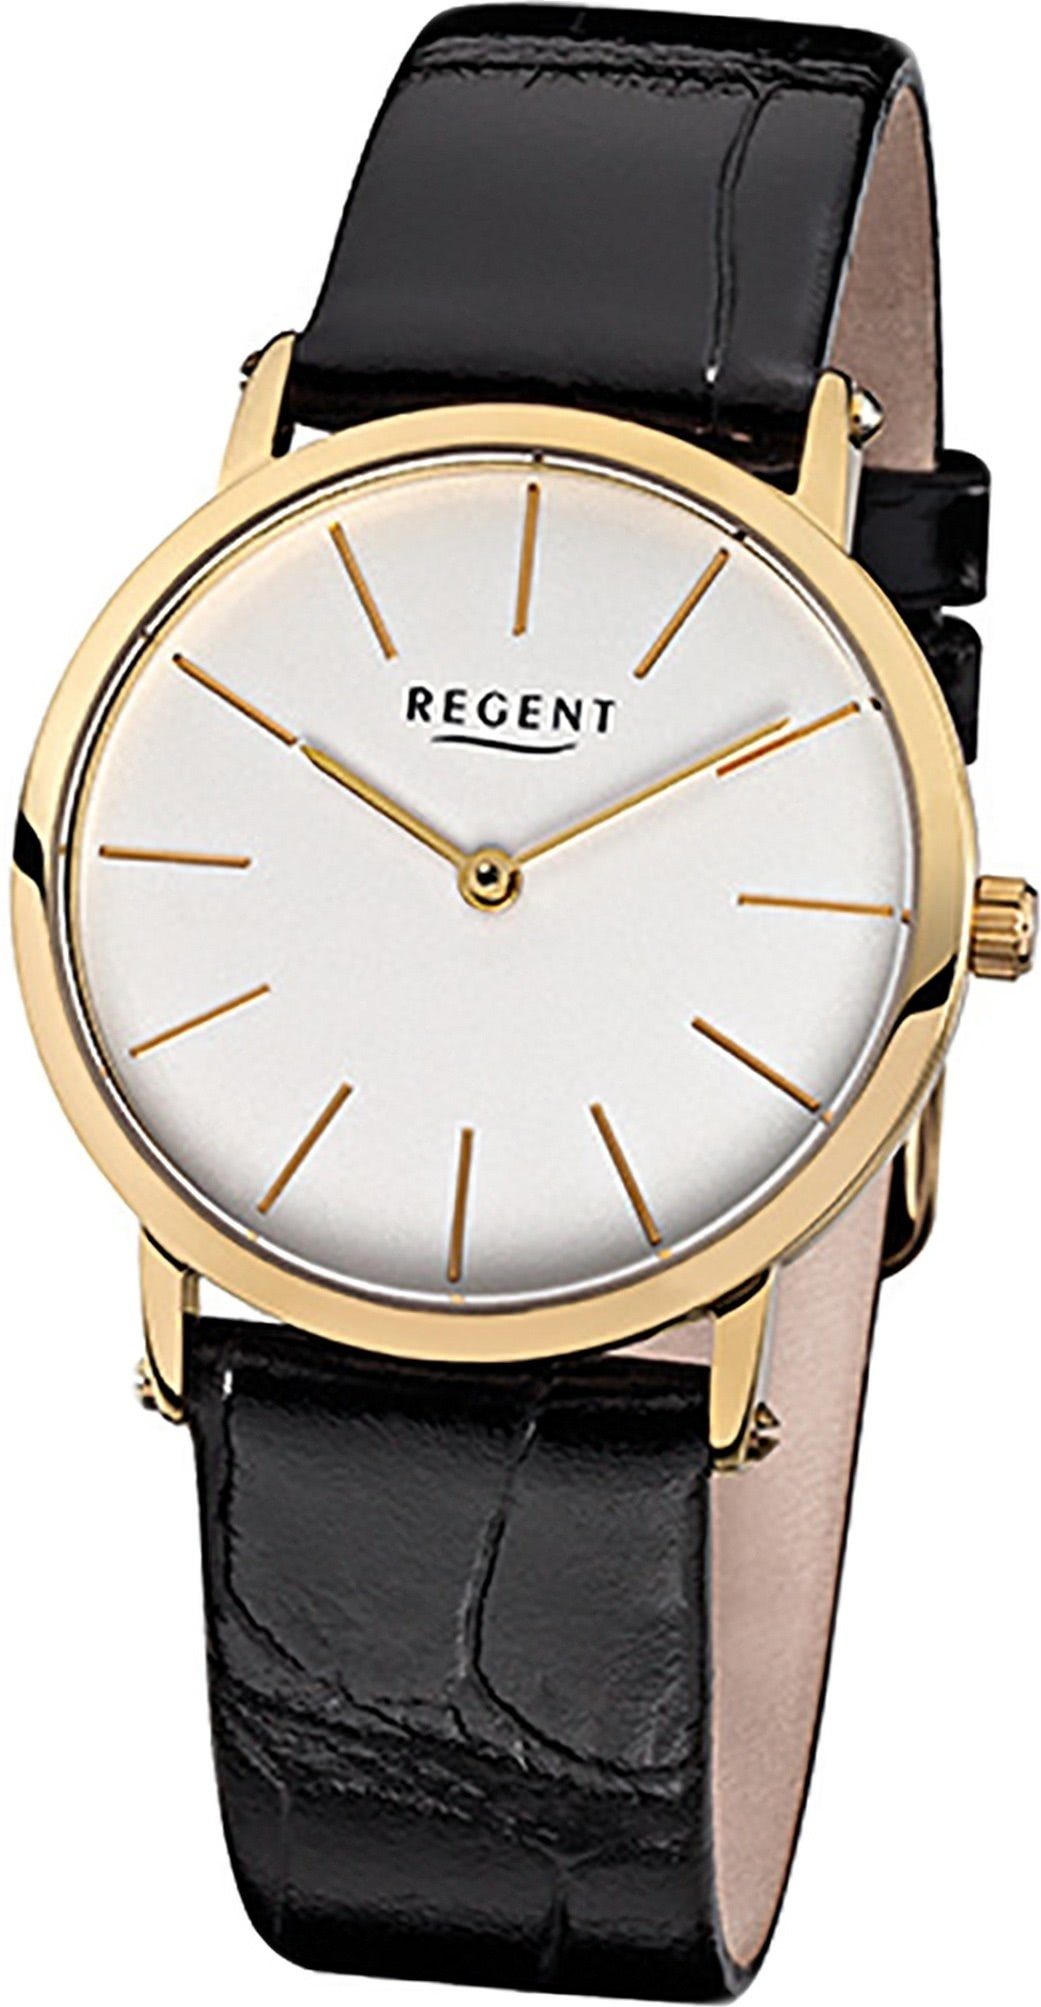 Regent Quarzuhr Regent Leder Damen Uhr F-830 Quarzuhr, Damenuhr Lederarmband schwarz, rundes Gehäuse, mittel (ca. 33mm)